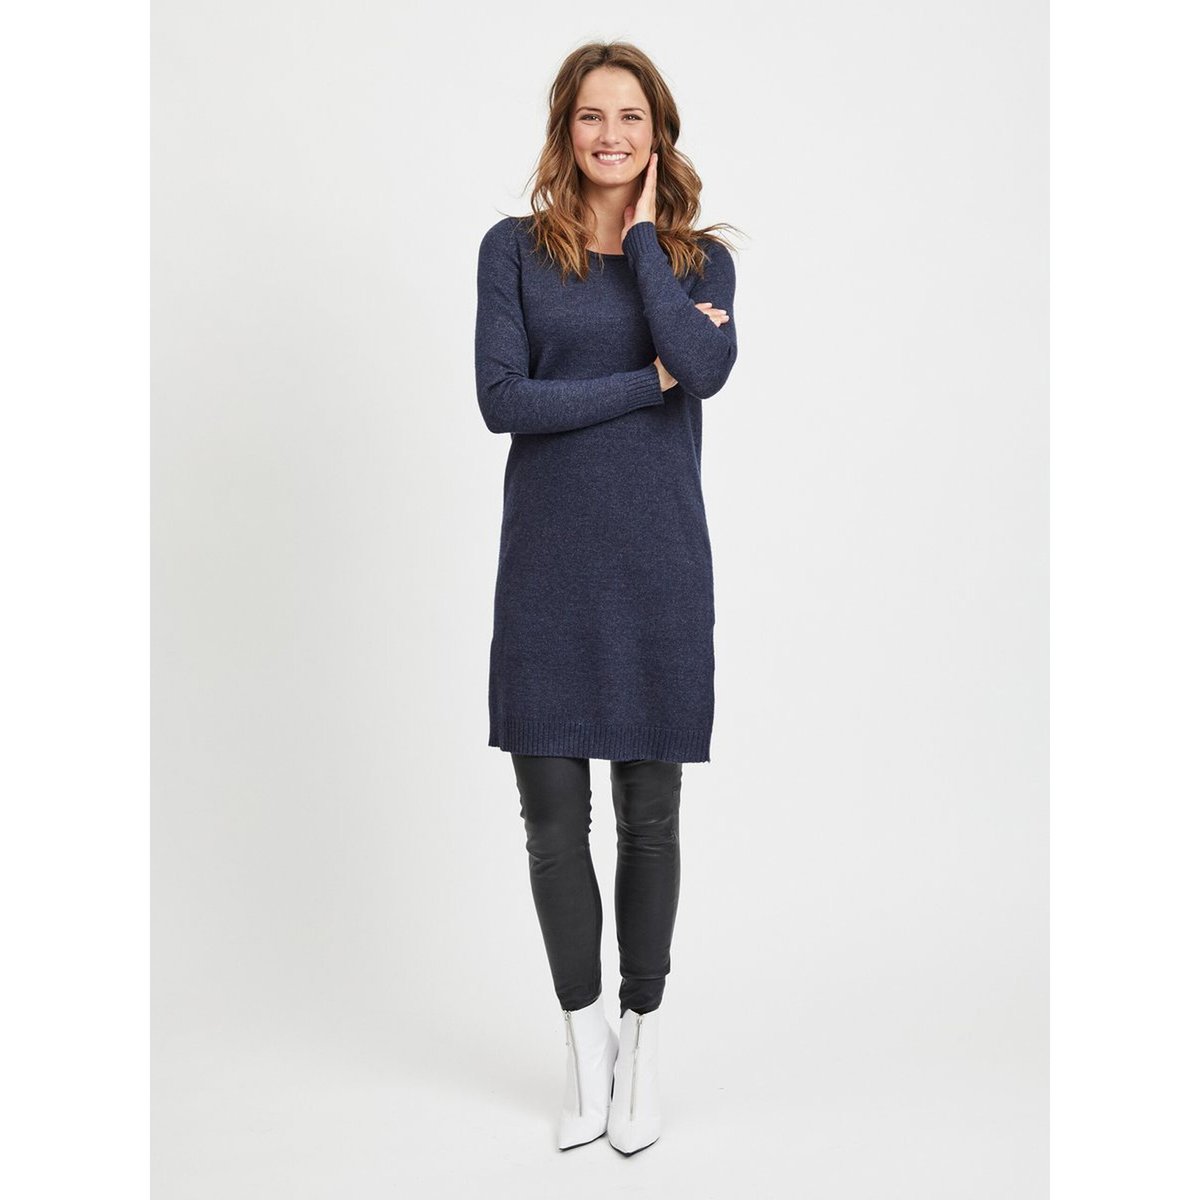 Платье-пуловер La Redoute С круглым вырезом и длинными рукавами S синий, размер S - фото 4